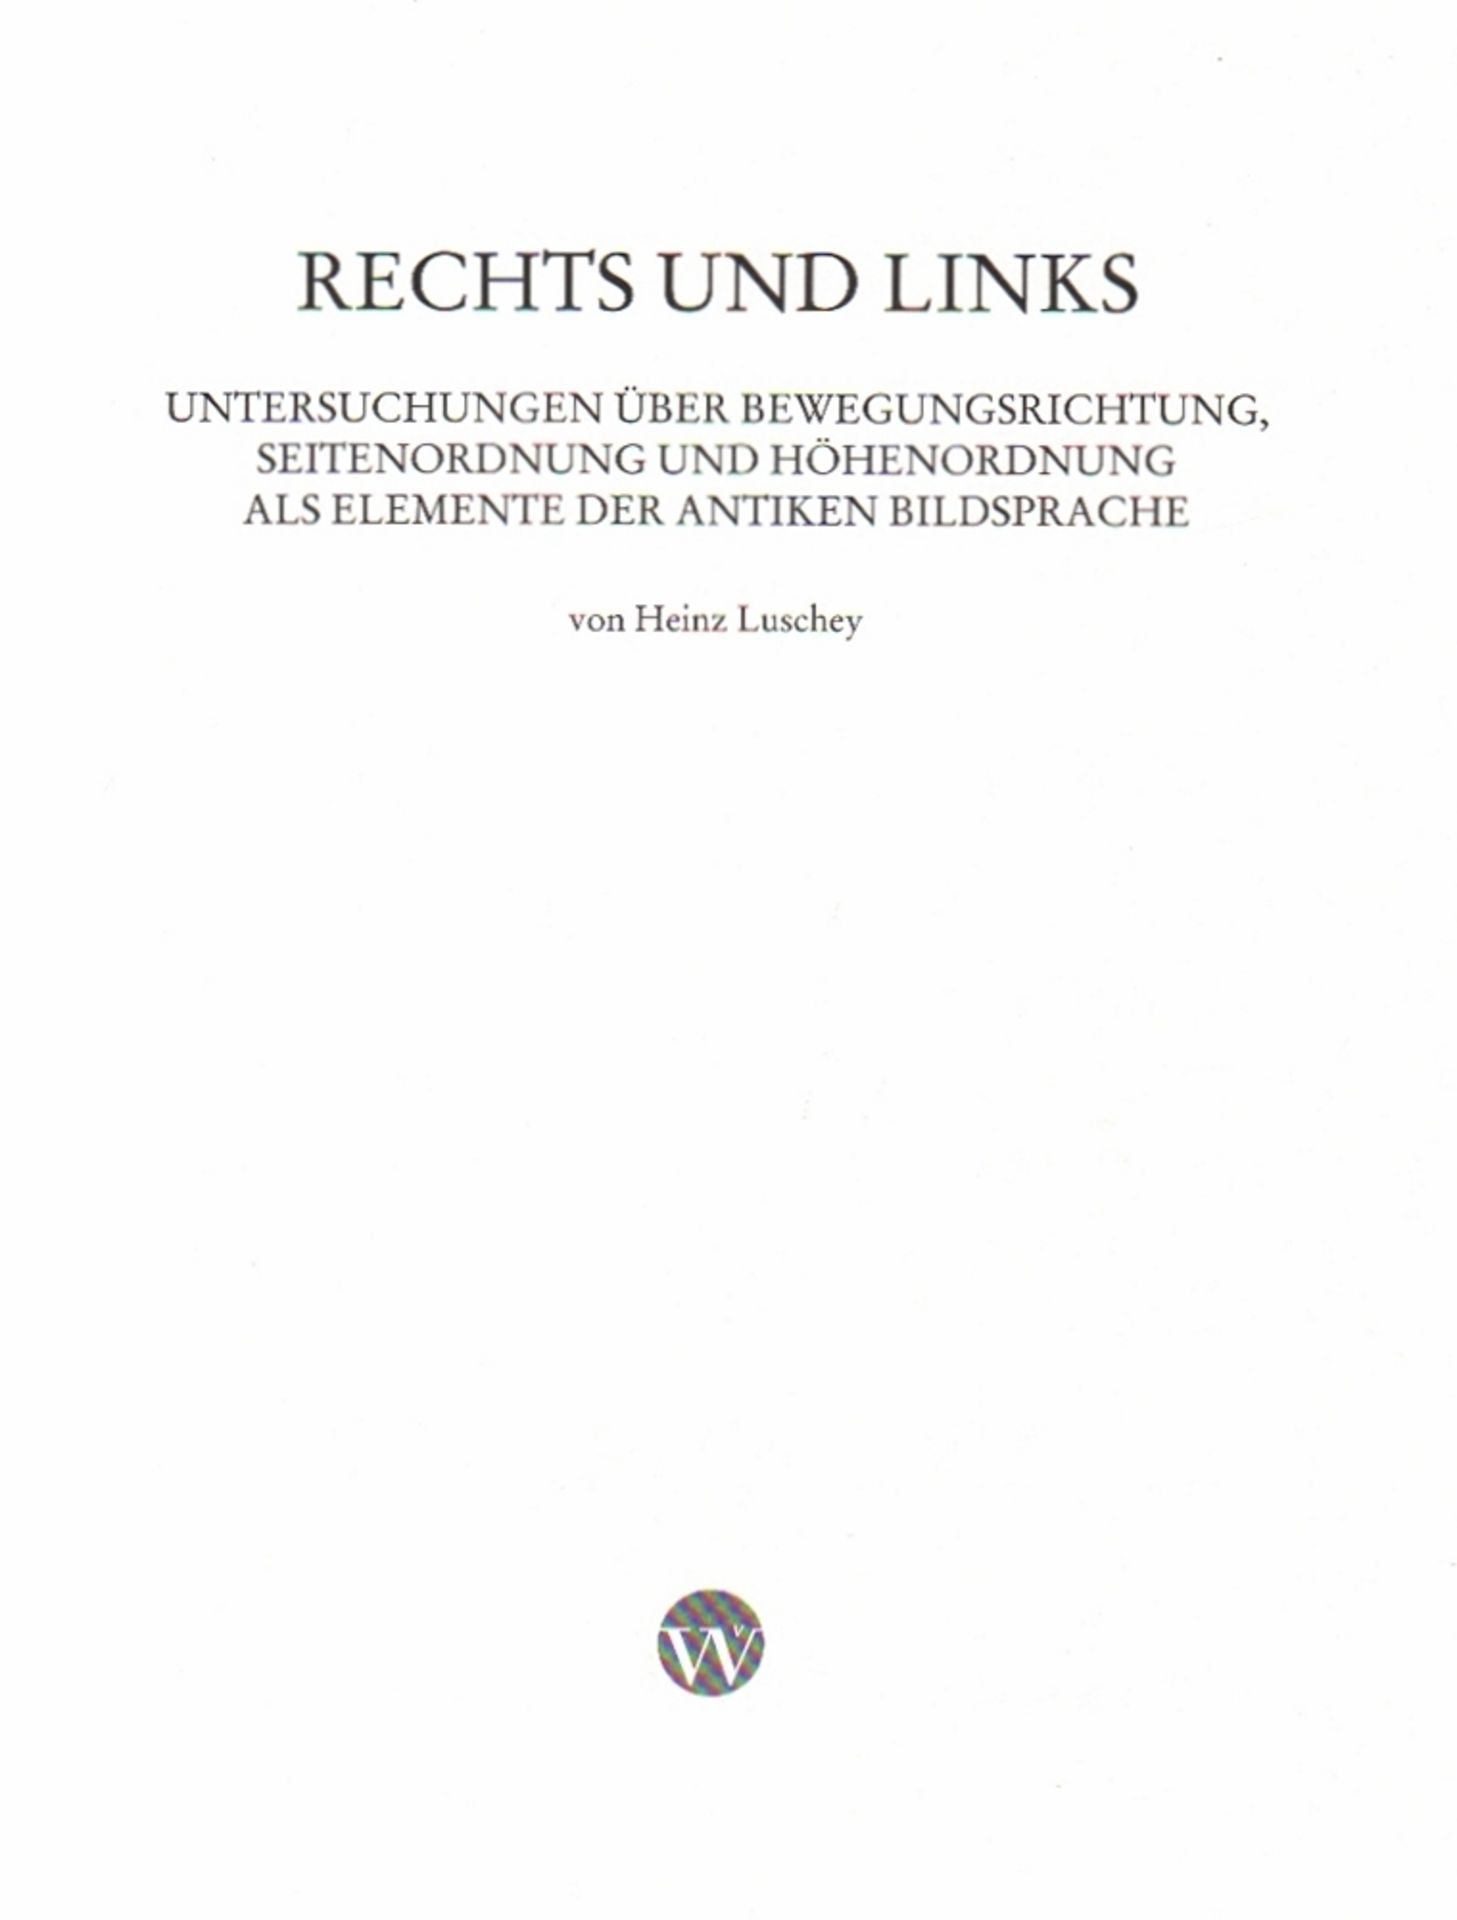 Kunst. Luschey, Heinz. Rechts und Links. Untersuchungen über Bewegungsrichtung, Seitenordung und